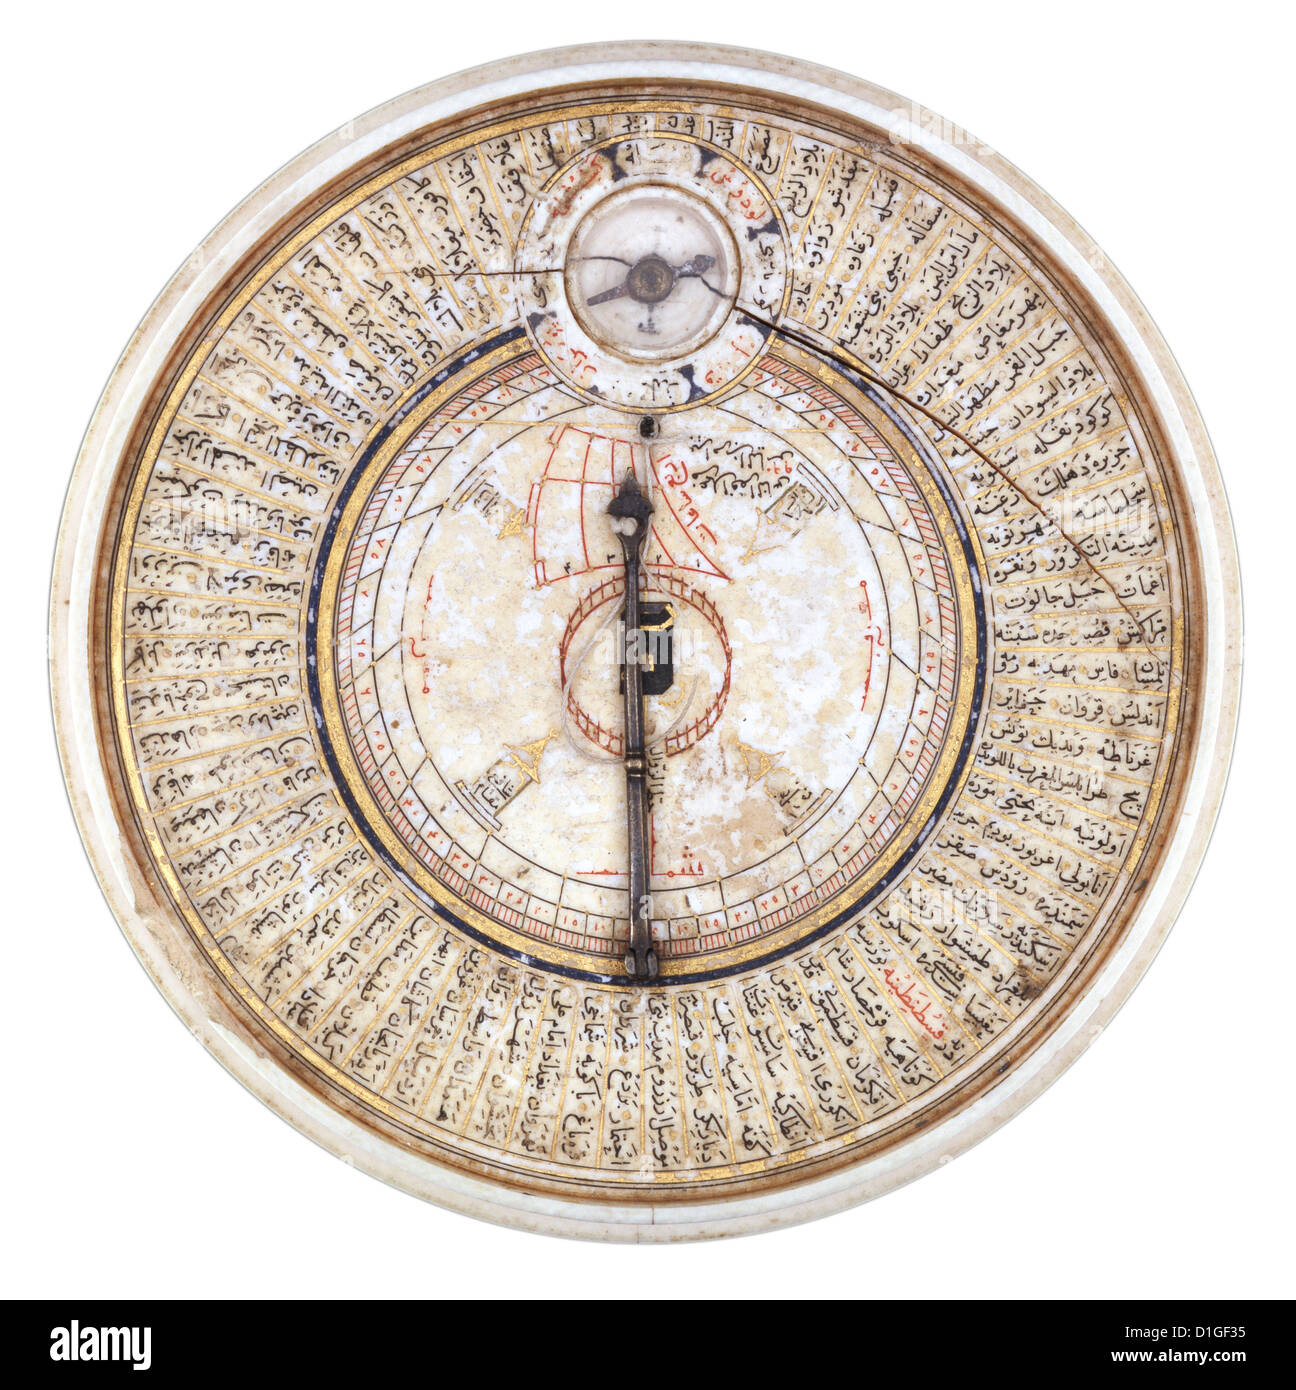 Historischen islamischen Kompass für Mekka; 17. Jahrhundert Sonnenuhr und Kiblah, Qiblah Zeiger. Stockfoto